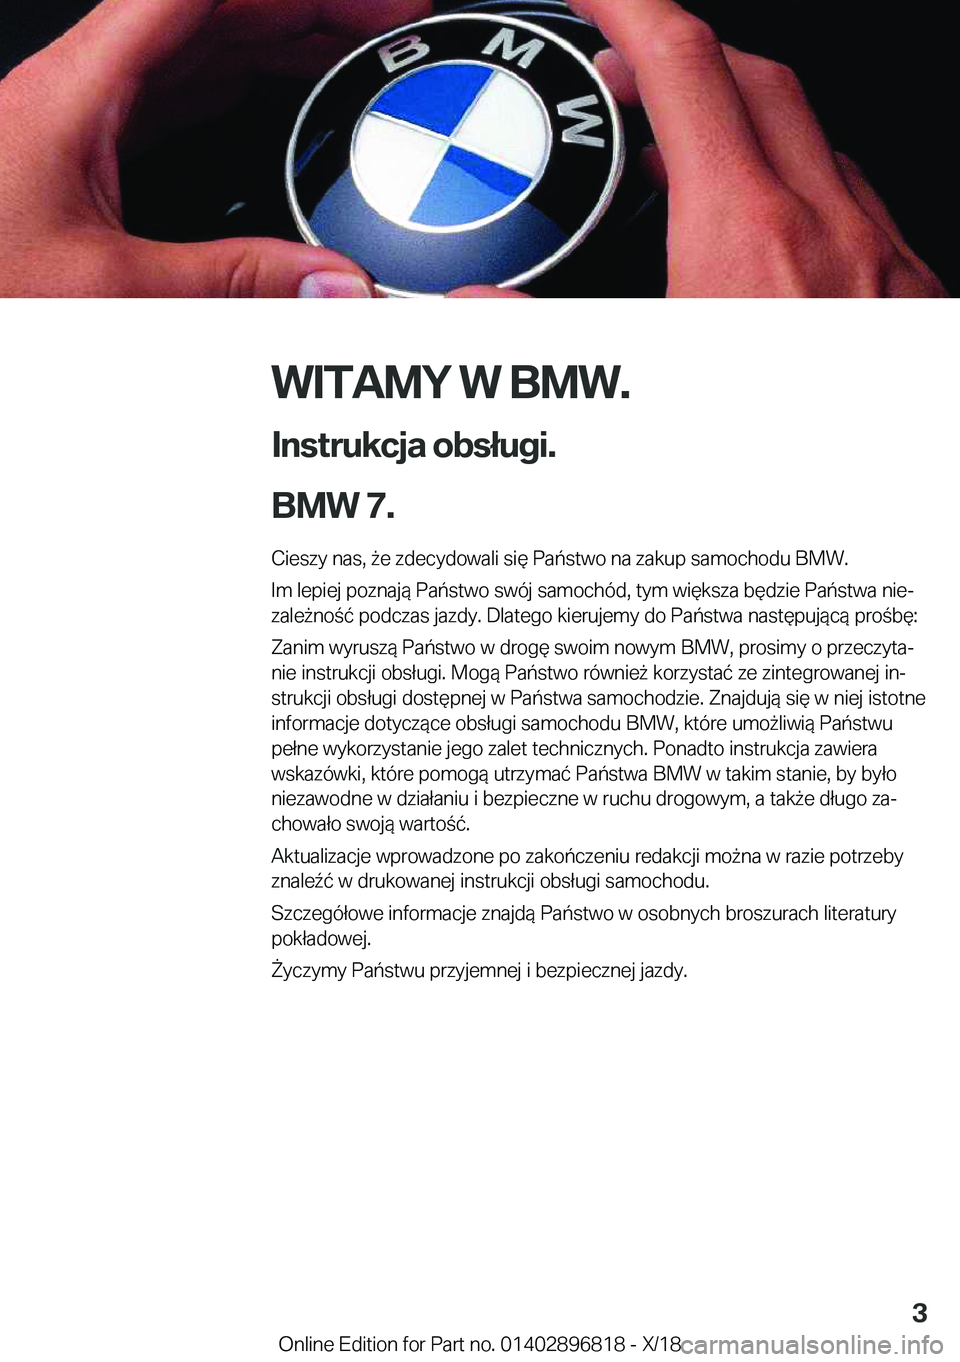 BMW 7 SERIES 2019  Instrukcja obsługi (in Polish) �W�I�T�A�M�Y��W��B�M�W�.
�I�n�s�t�r�u�k�c�j�a��o�b�s�ł�u�g�i�.
�B�M�W��7�. �C�i�e�s�z�y��n�a�s�,�9�e��z�d�e�c�y�d�o�w�a�l�i��s�i�